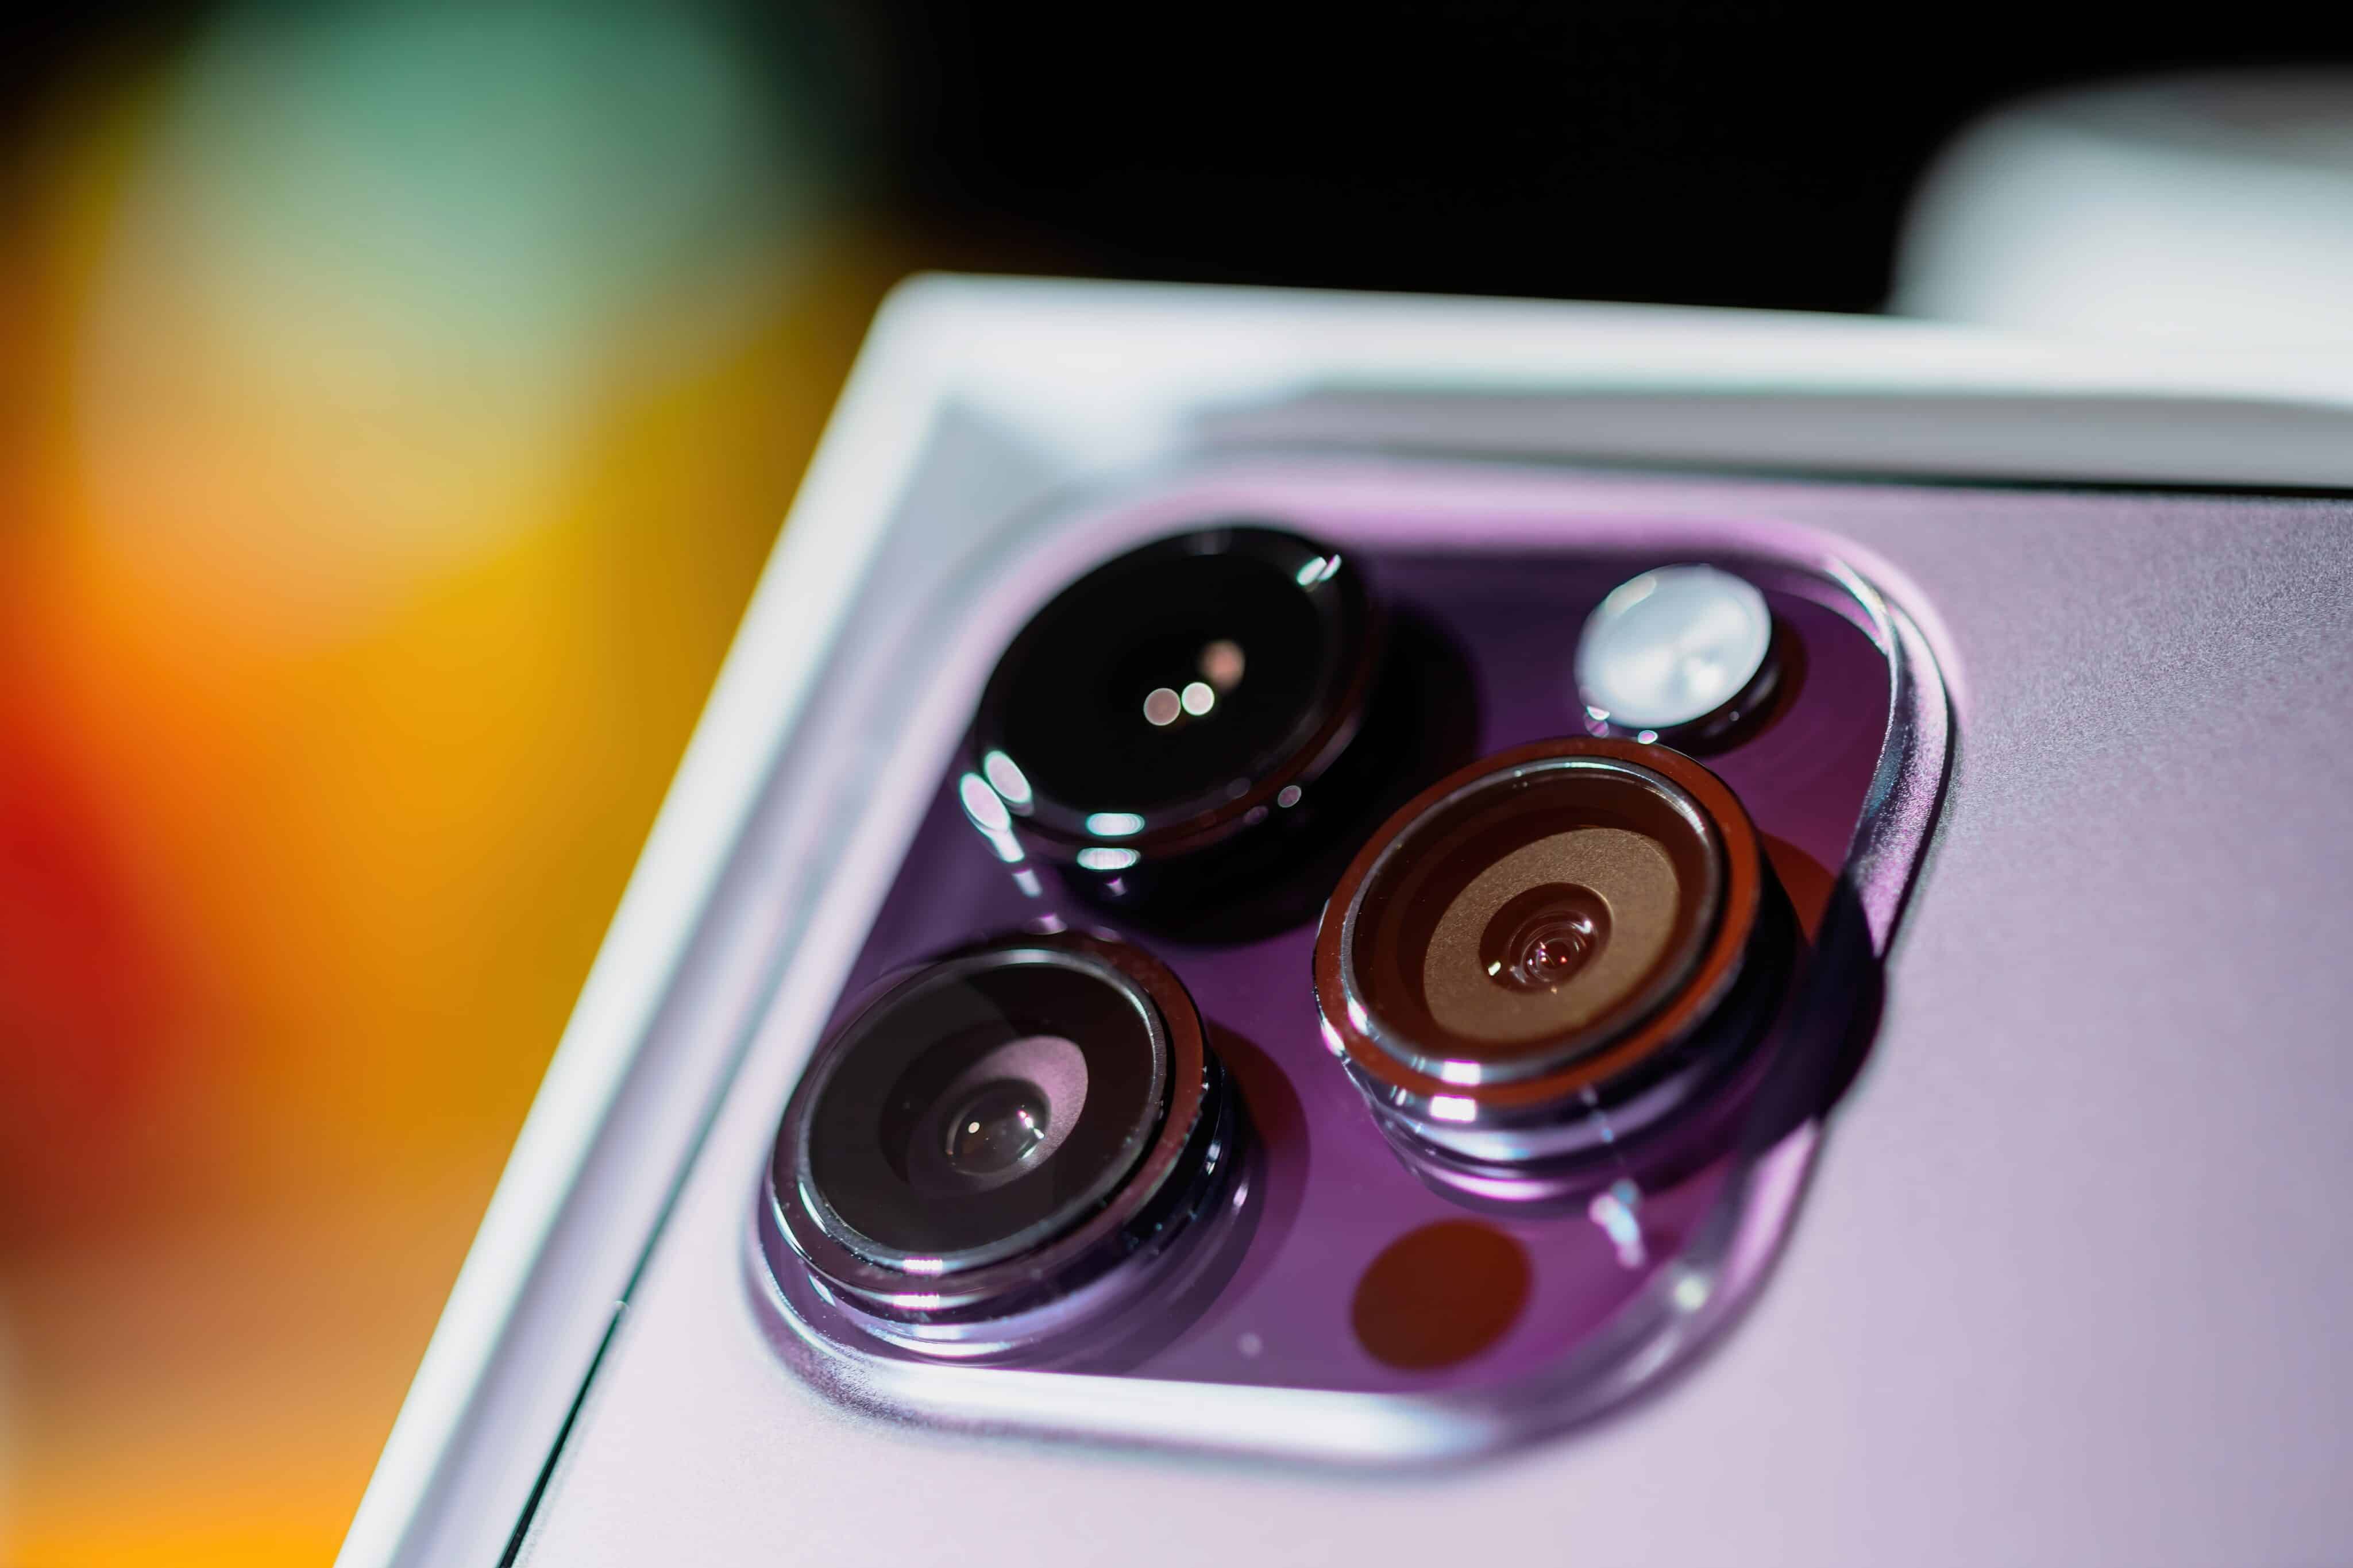 Qual o melhor? Samsung Galaxy S23 Ultra enfrenta iPhone 14 Pro Max em teste  de câmera 